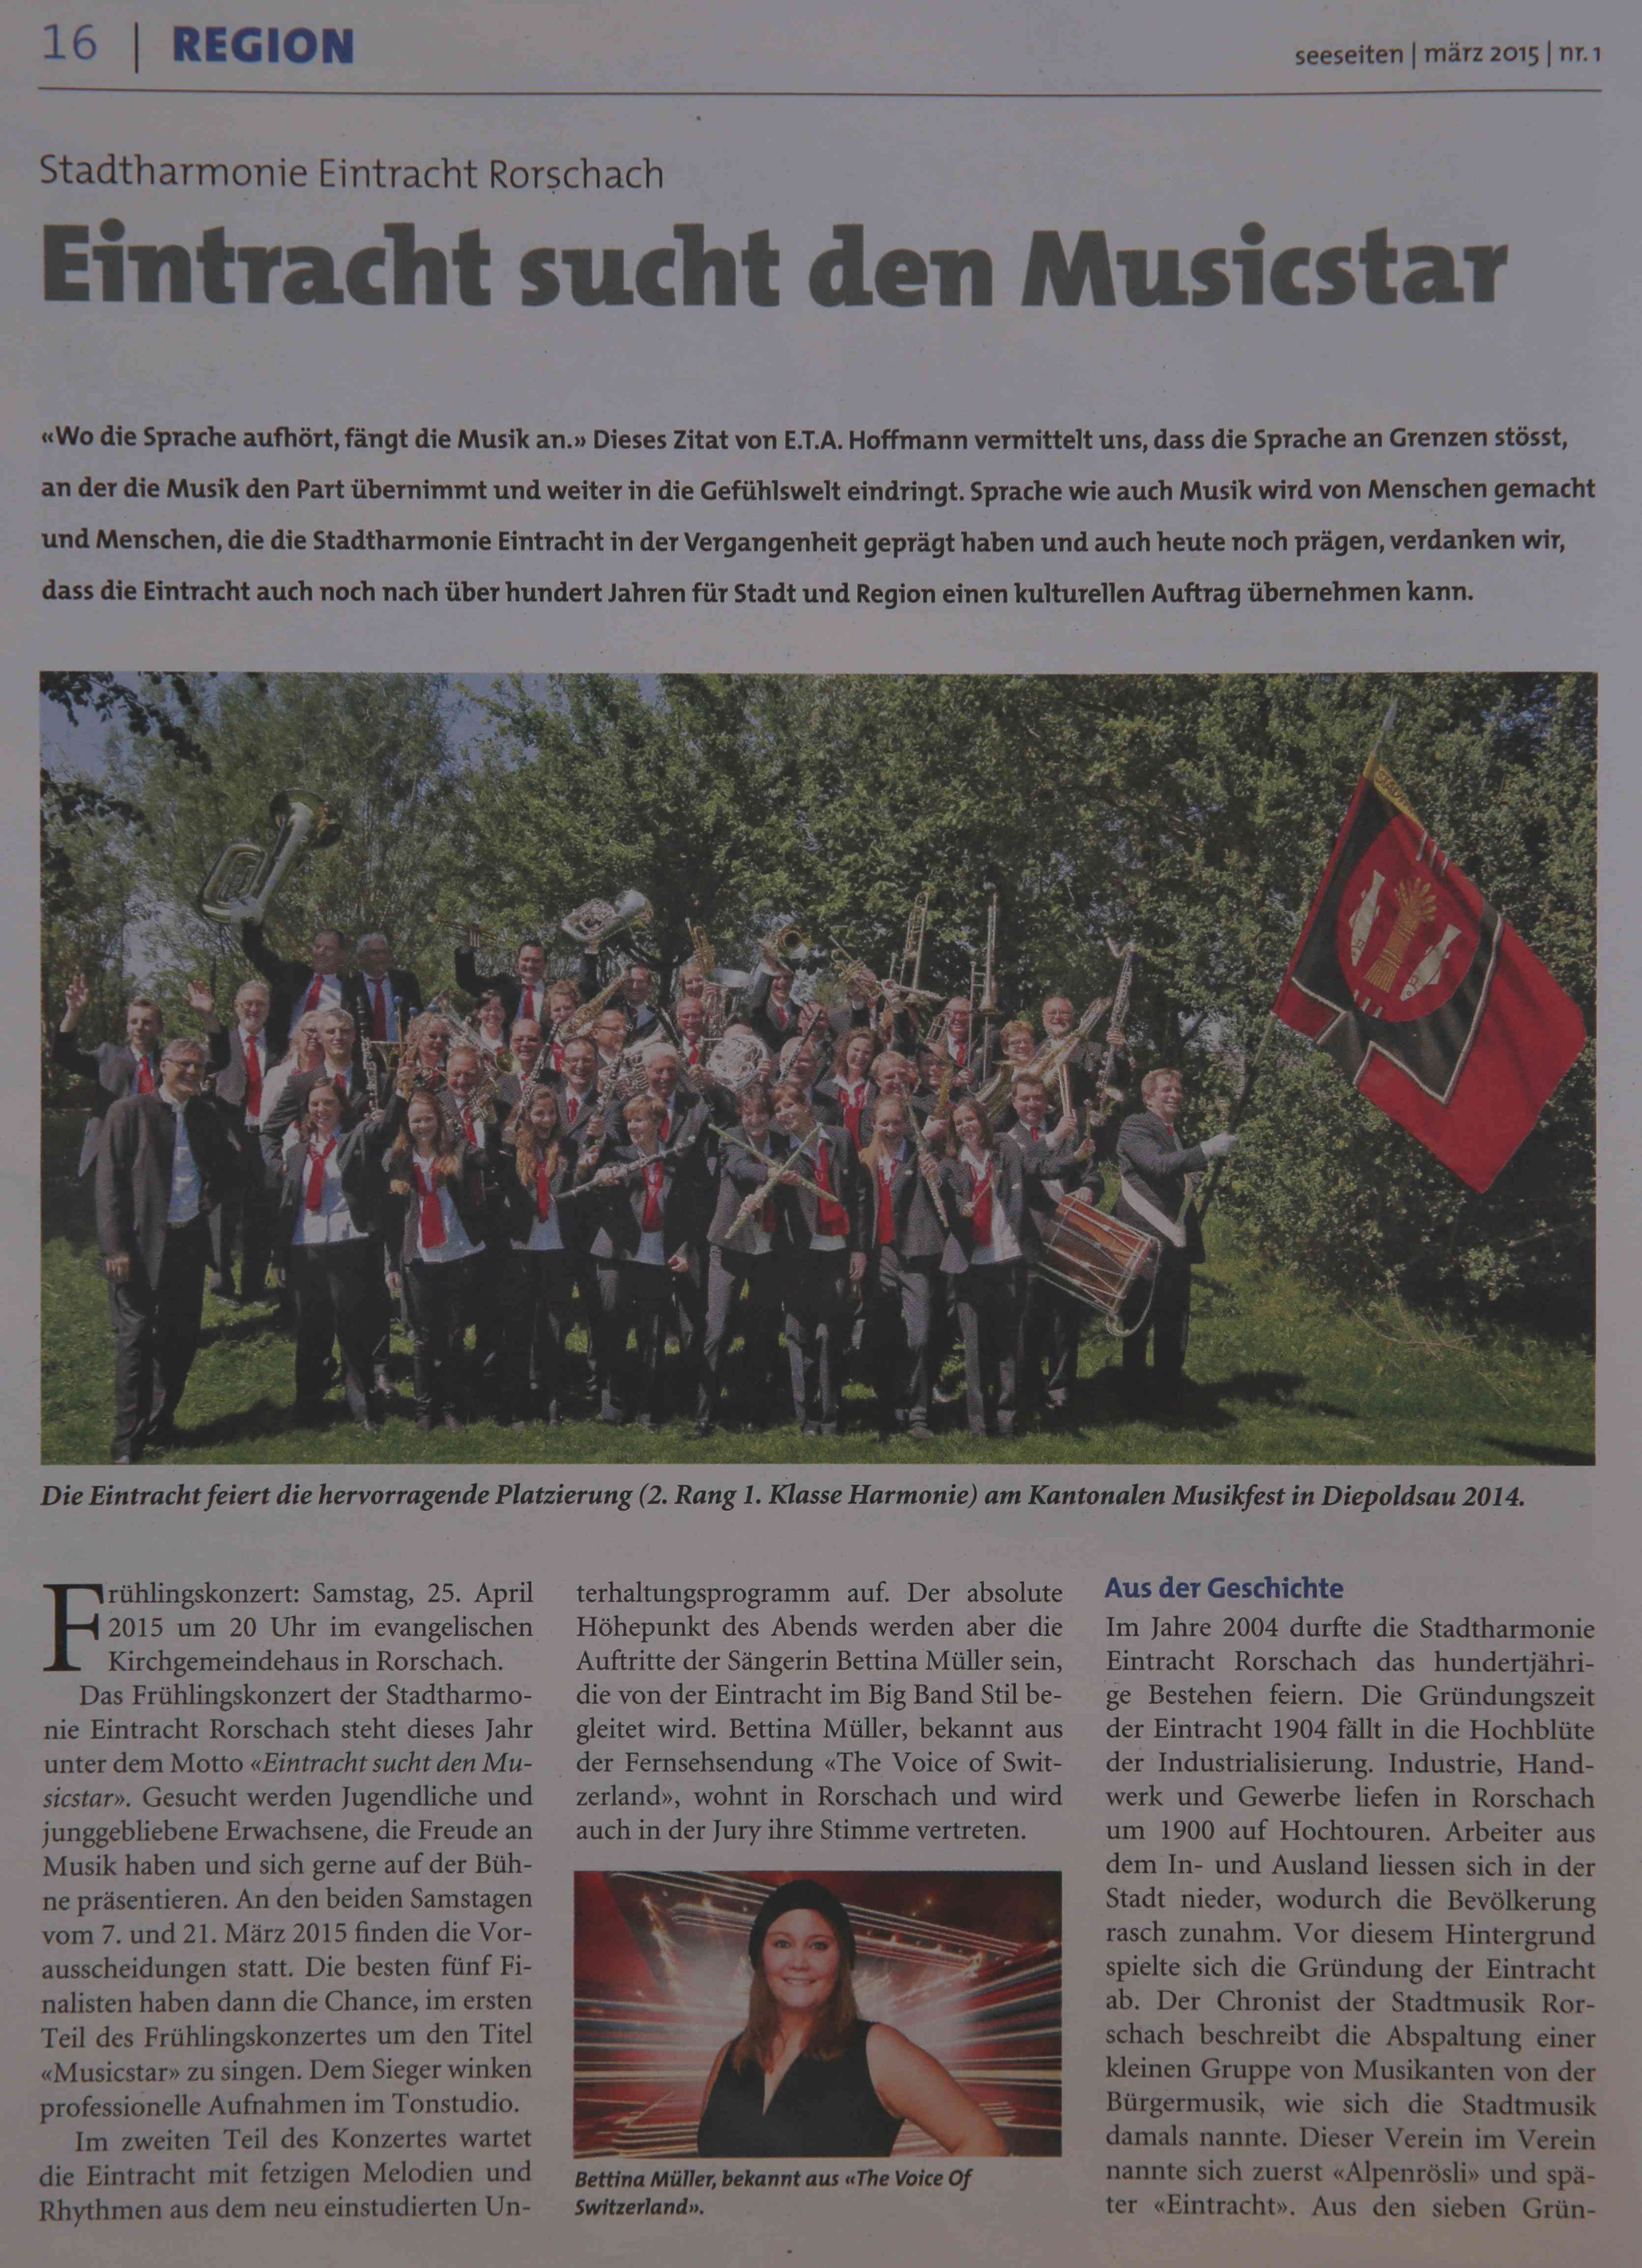 Eintracht sucht den Musicstar - Seeseiten März 2015 Nr. 1 S 16